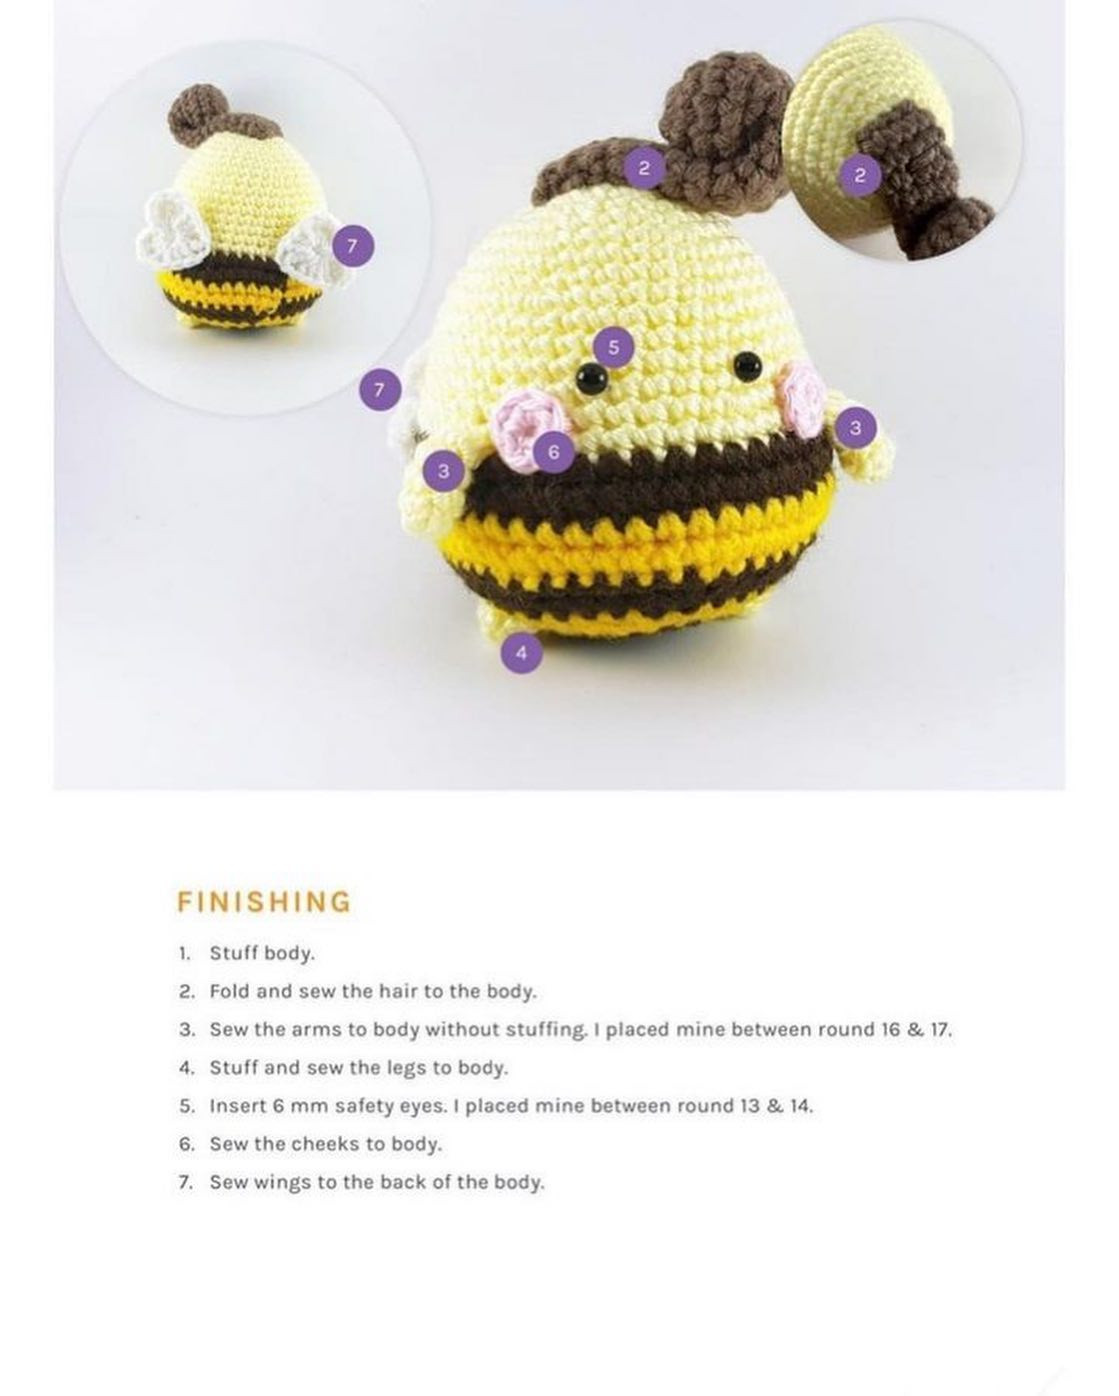 bernie the bee fairy crochet pattern